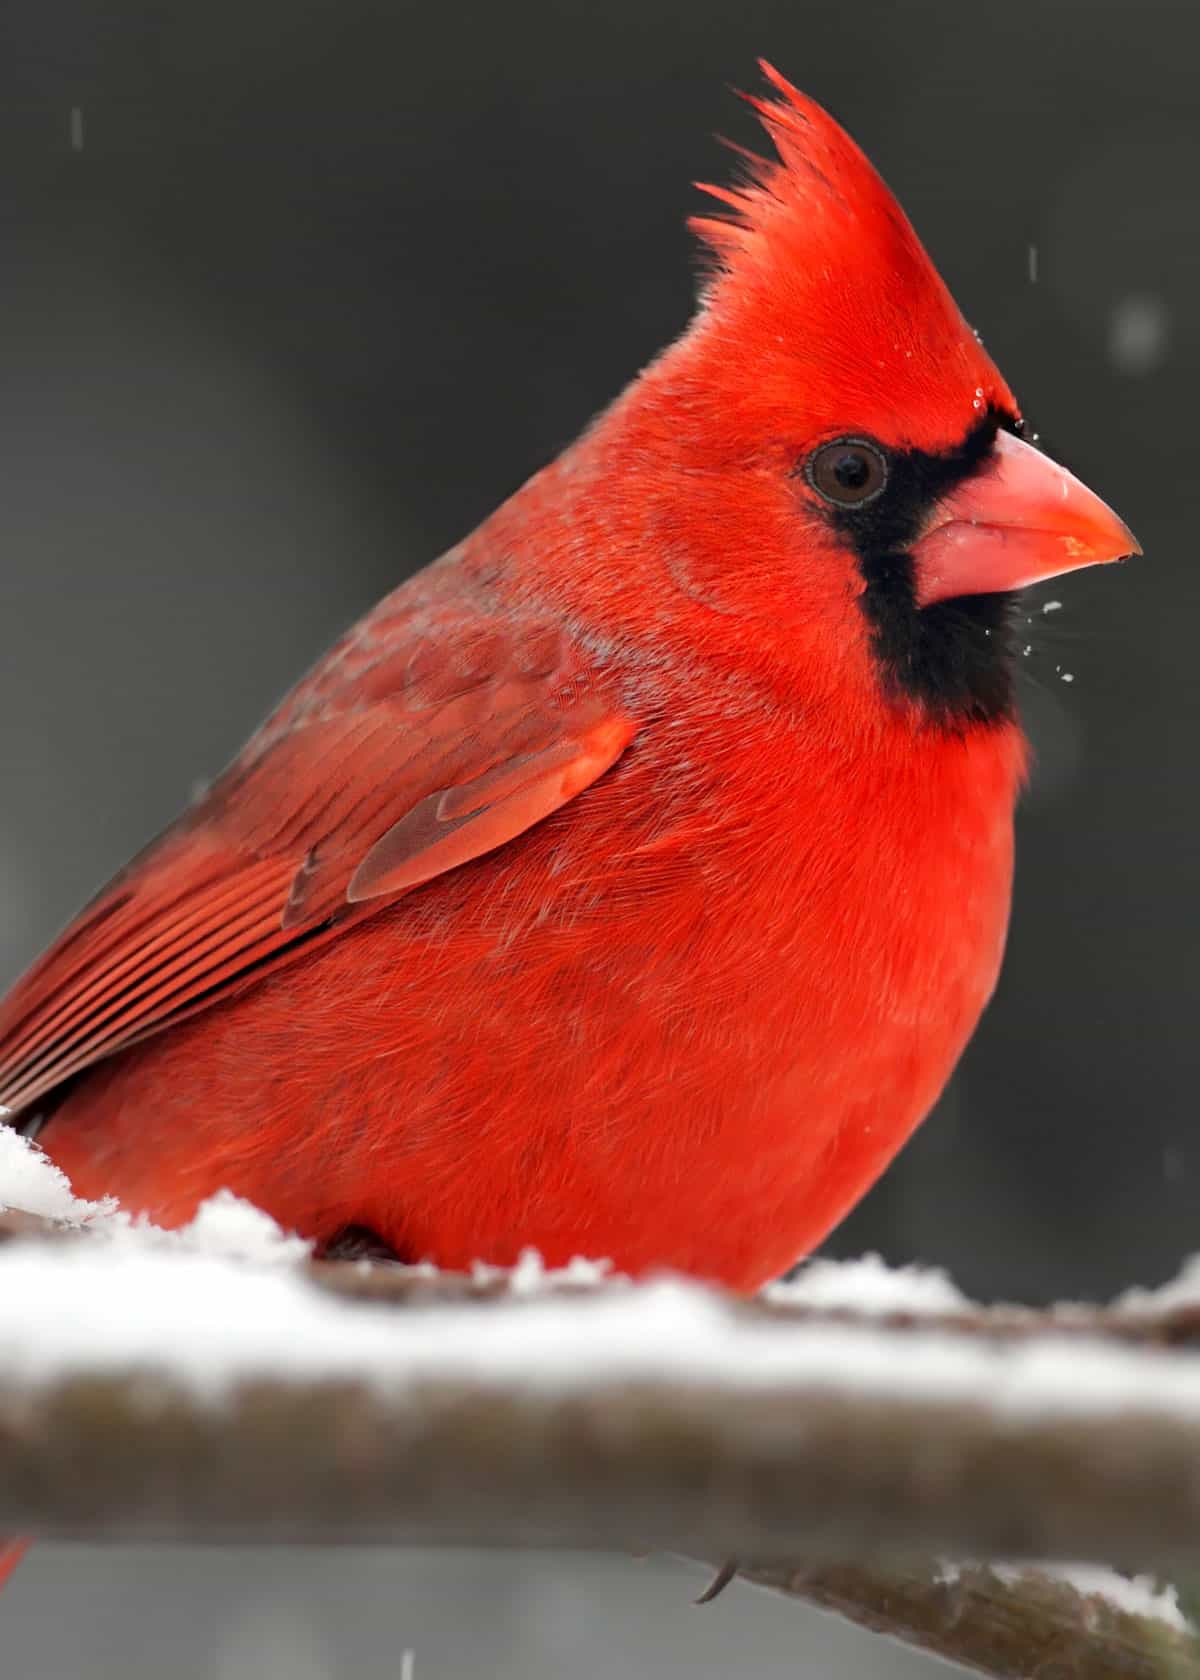 Best bird food for cardinals